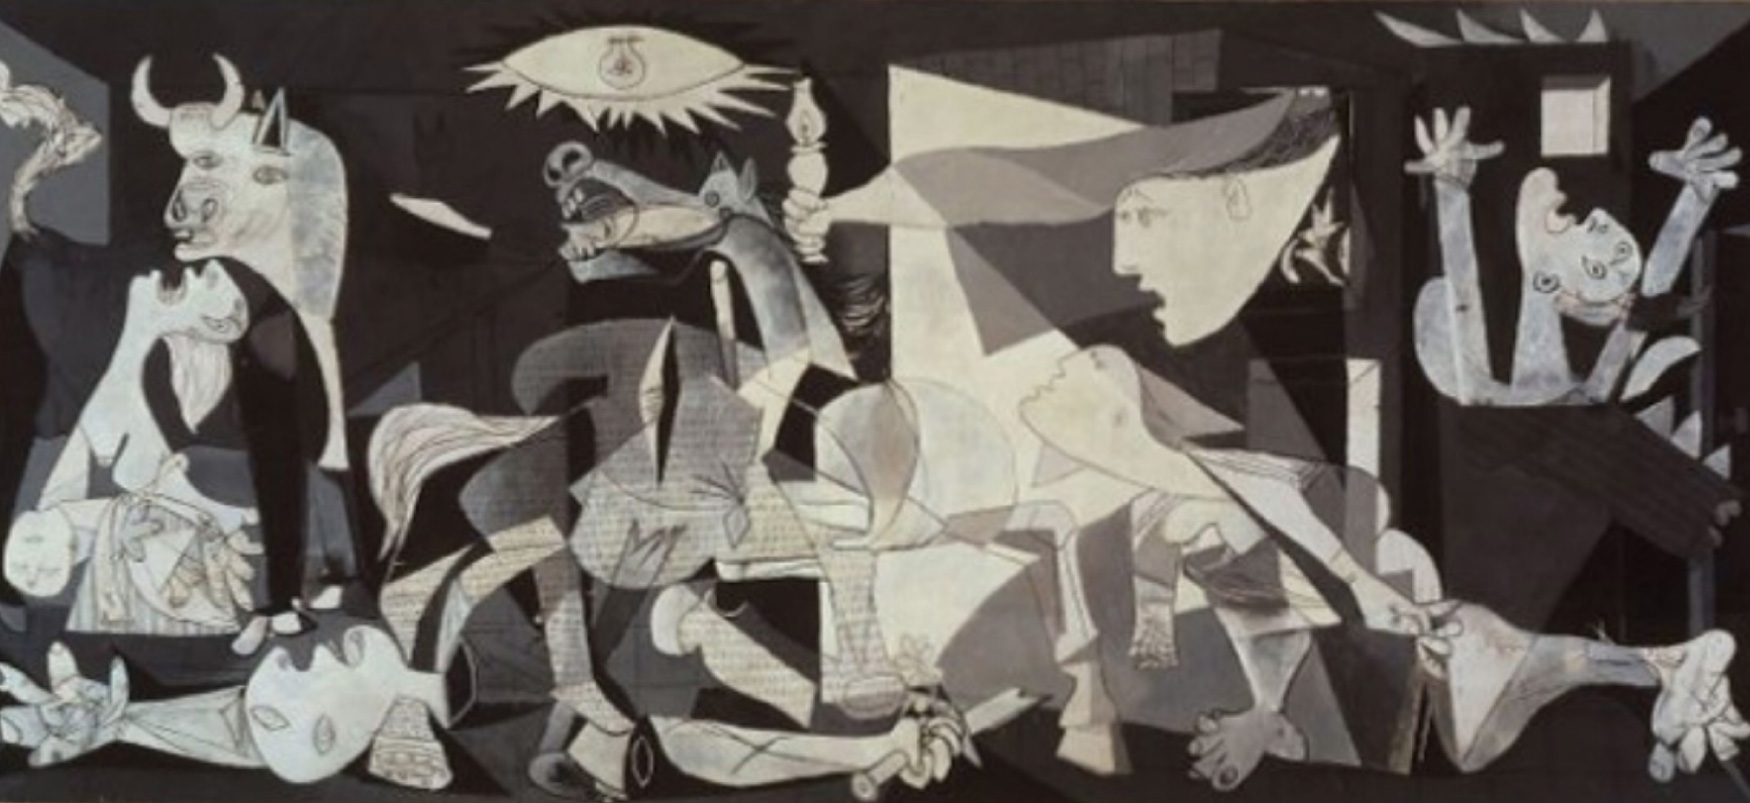 Guernica est une grande peinture en gris, noir et blanc de Pablo Picasso. Les principales images du tableau sont un cheval corné, un taureau, une femme qui crie, un bébé mort, un soldat démembré et des flammes. Les proportions déformées qui font la réputation des œuvres de Picasso sont présentes dans ce tableau.